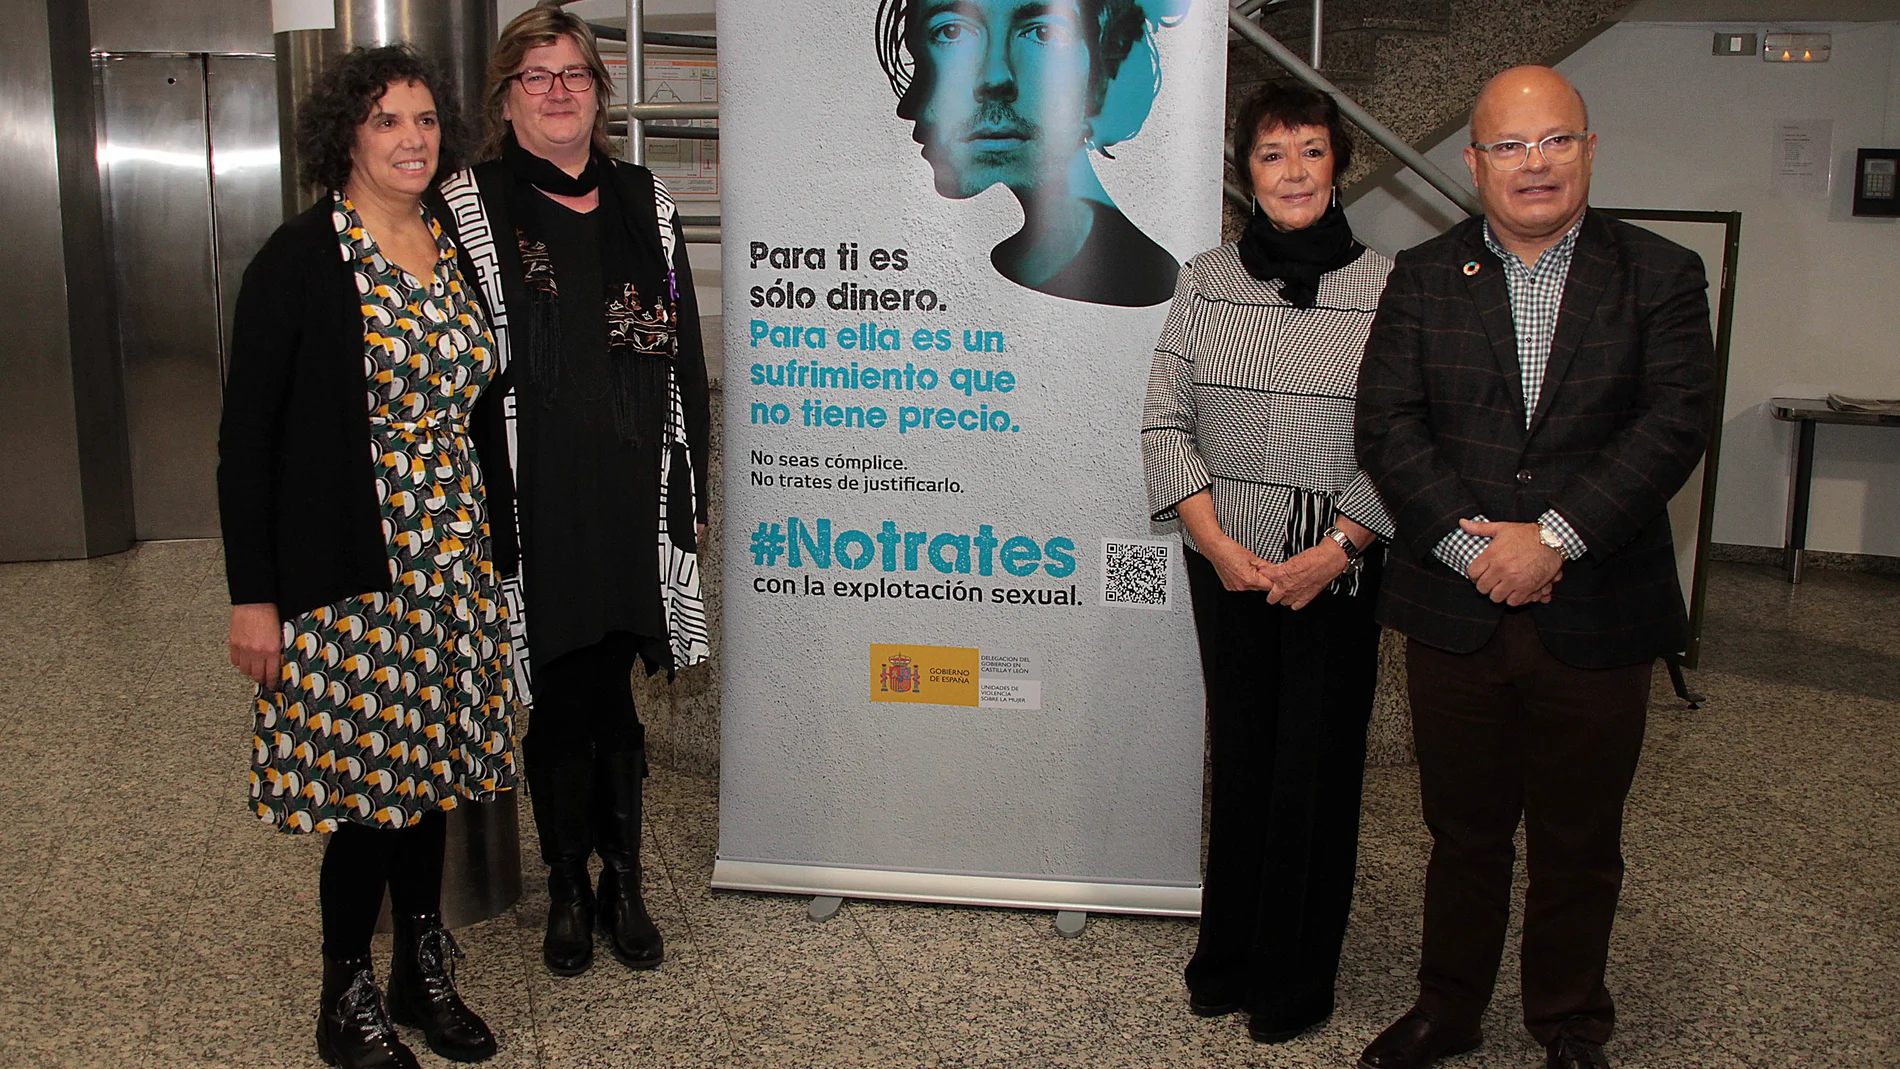 Mercedes Martín, acompañada por la presidenta de la Asociación de Periodistas Feministas de Castilla y León (APFCYL), Ana Gaitero, la concejala Argelia Cabado, y el subdelegado Faustino Sánchez